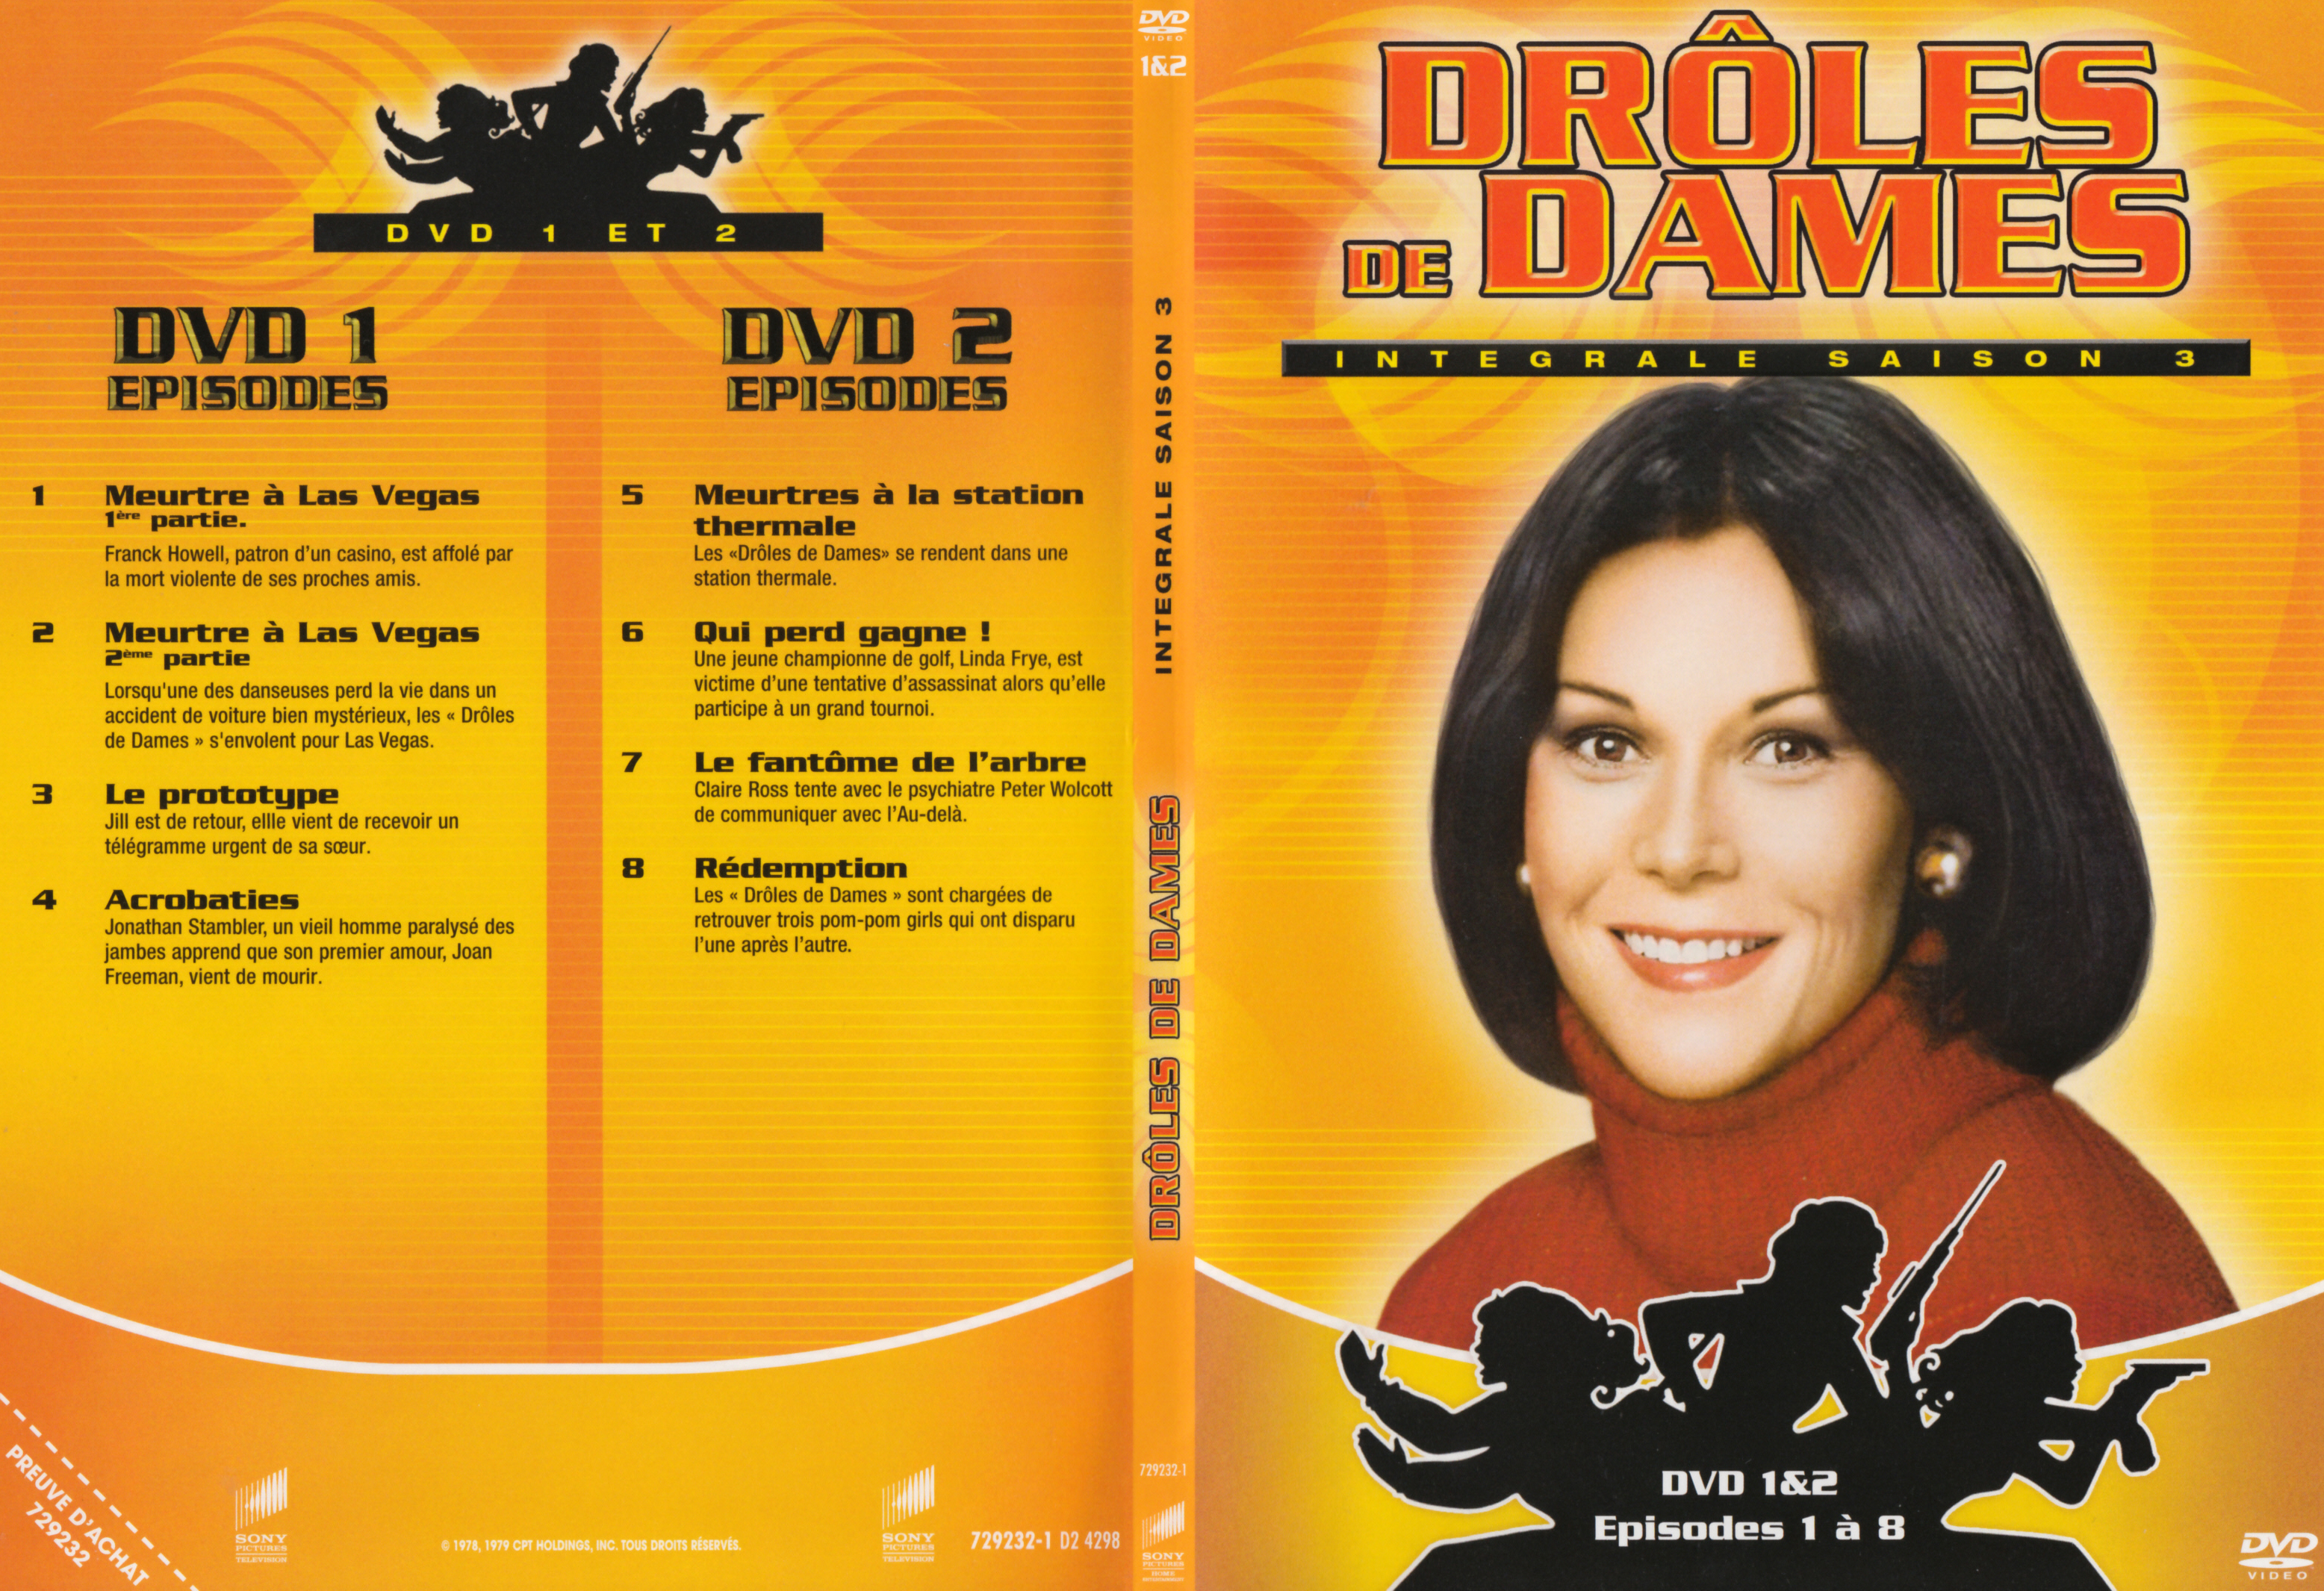 Jaquette DVD Drles de dames Saison 3 DVD 1